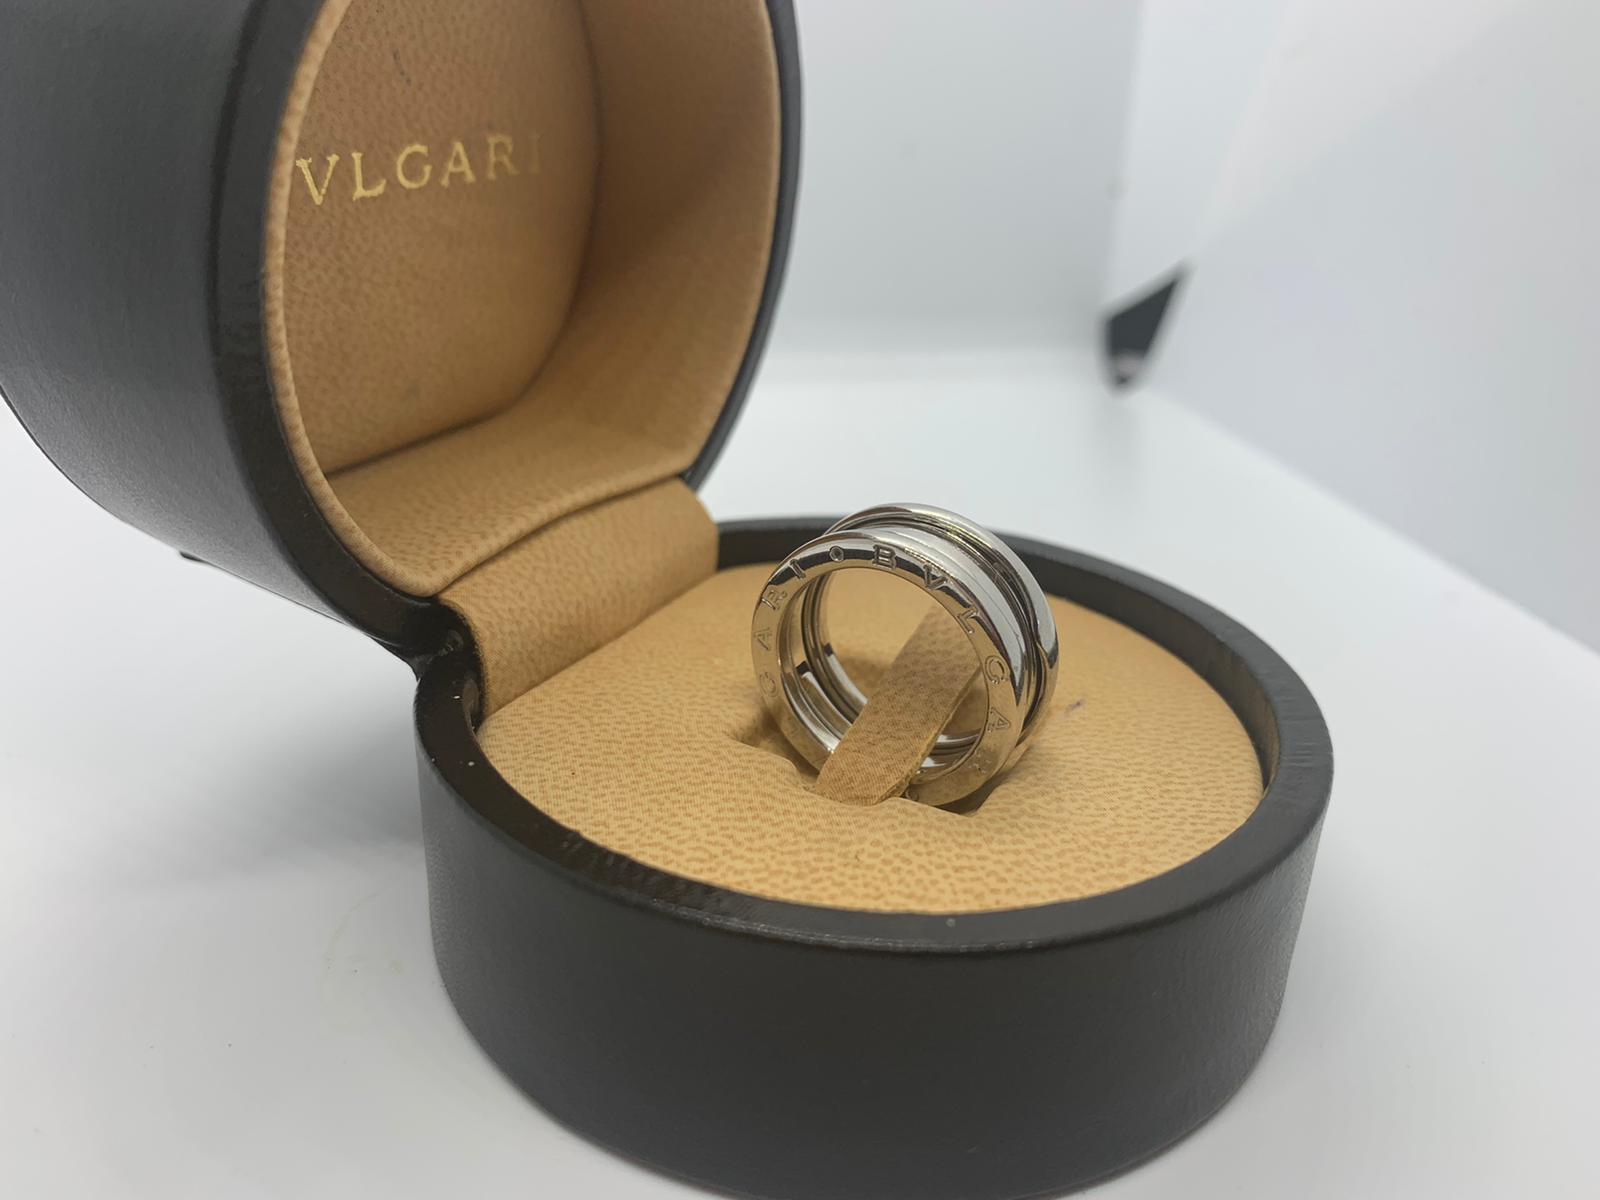 18ct white gold Bvlgari ring - Image 3 of 4